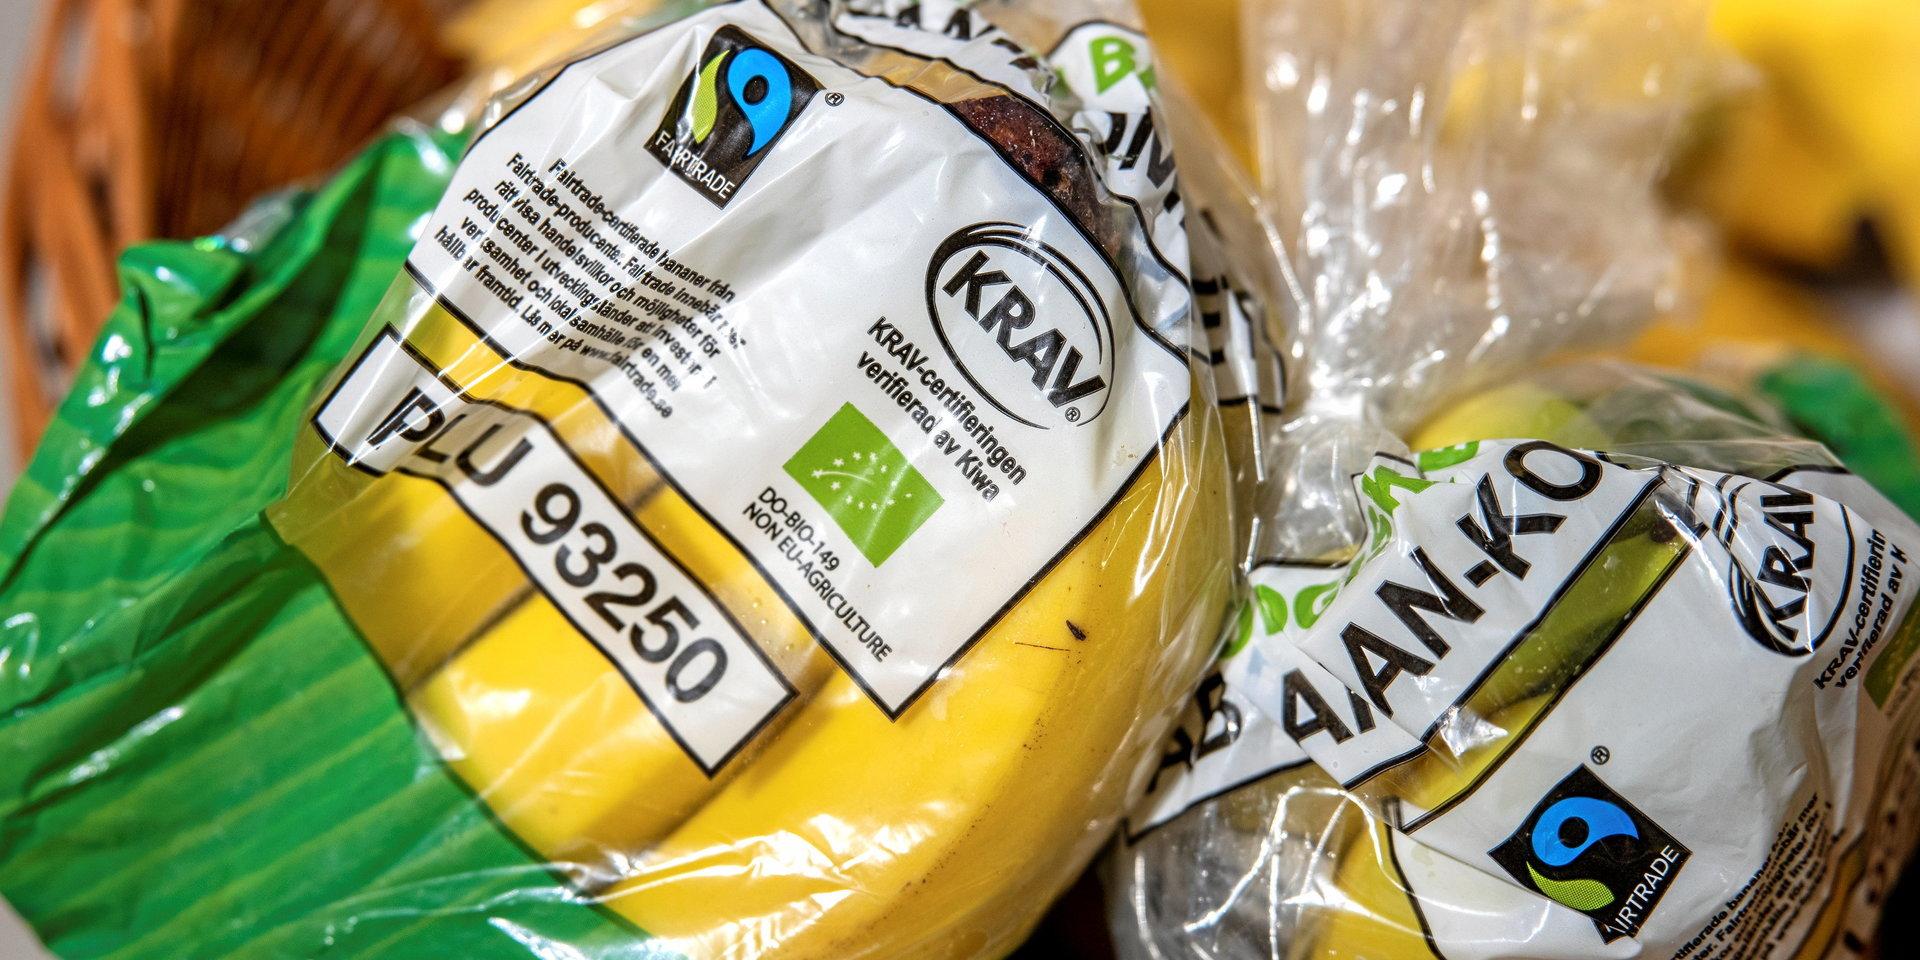 Förbättra förhållandena för odlare, handla Fairtrade bananer. 